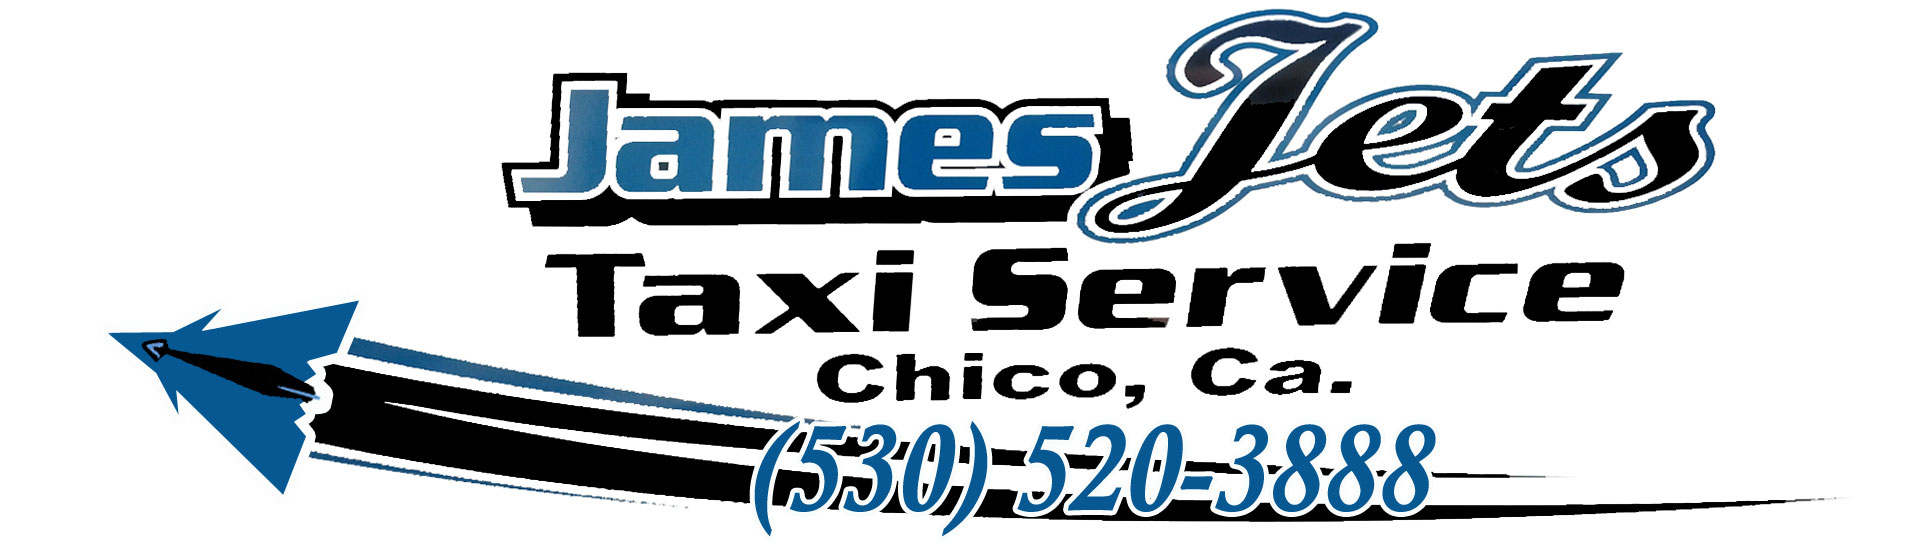 James Evans Taxi Service Logo